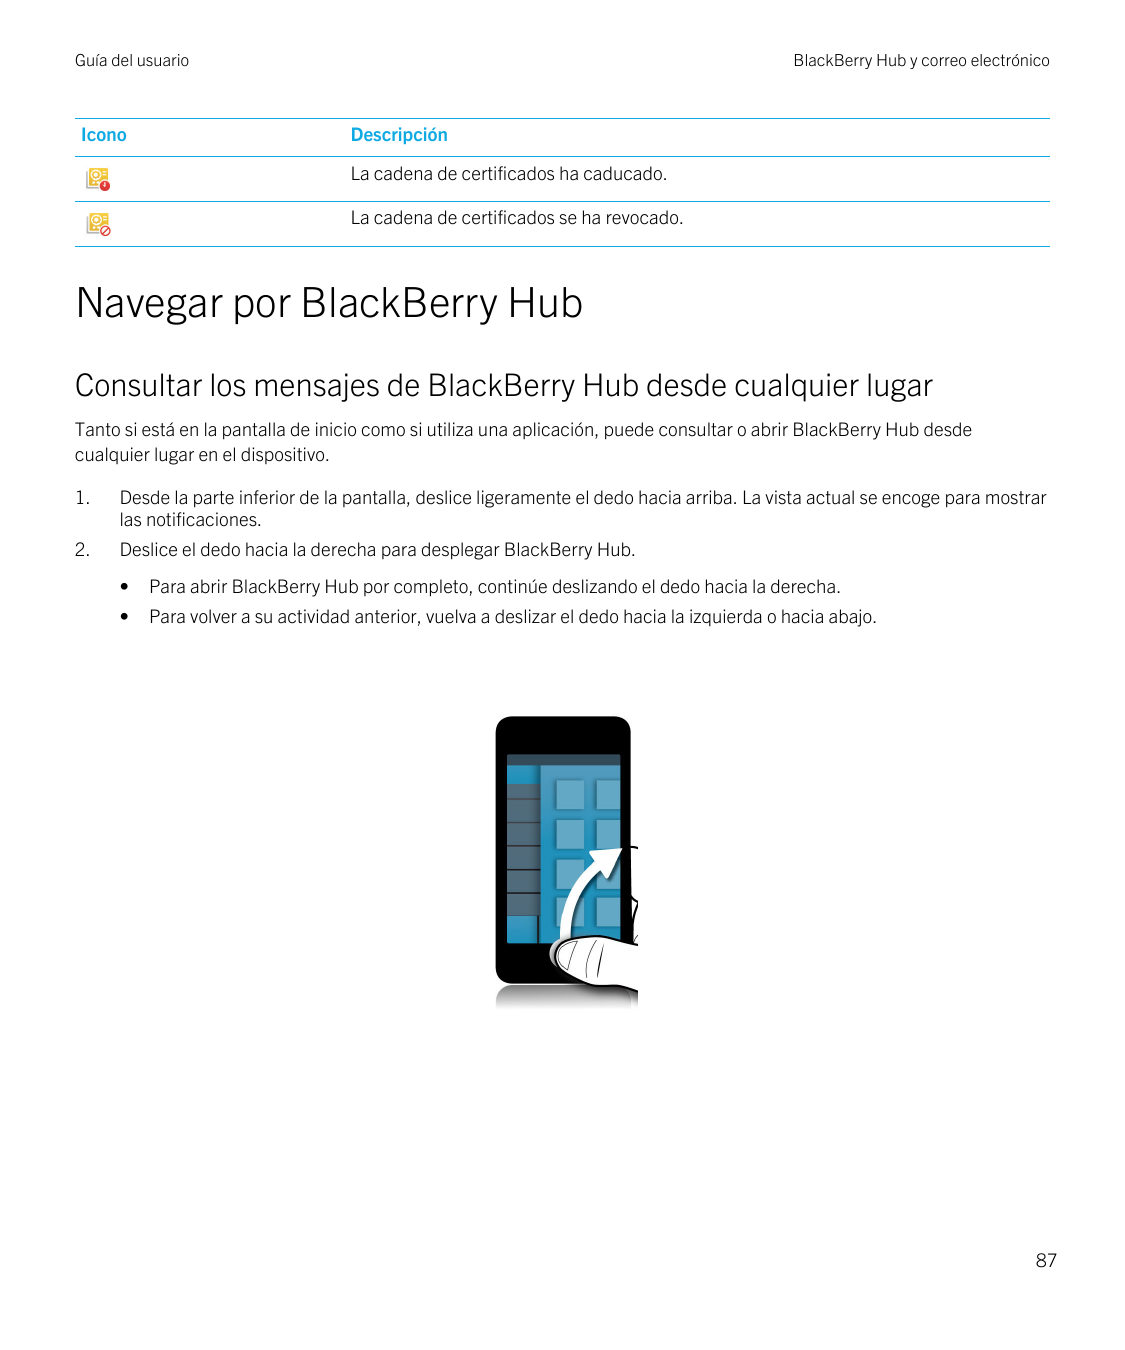 Guía del usuarioIconoBlackBerry Hub y correo electrónicoDescripciónLa cadena de certificados ha caducado.La cadena de certificad